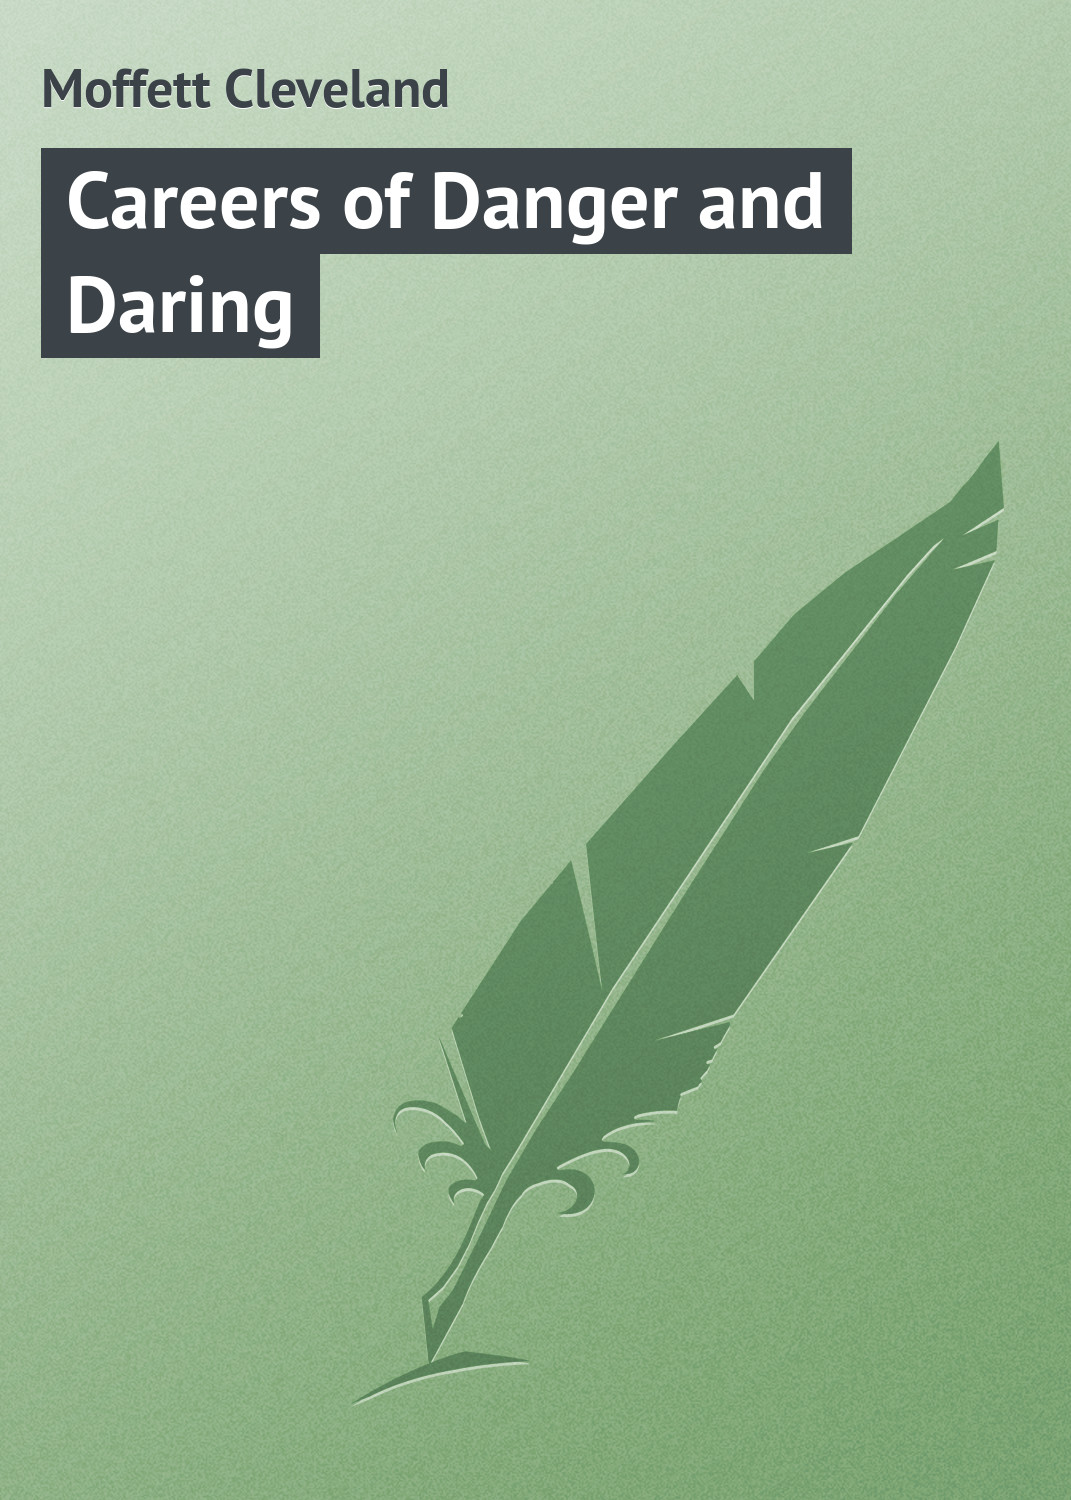 Книга Careers of Danger and Daring из серии , созданная Cleveland Moffett, может относится к жанру Зарубежная классика. Стоимость электронной книги Careers of Danger and Daring с идентификатором 23165115 составляет 5.99 руб.